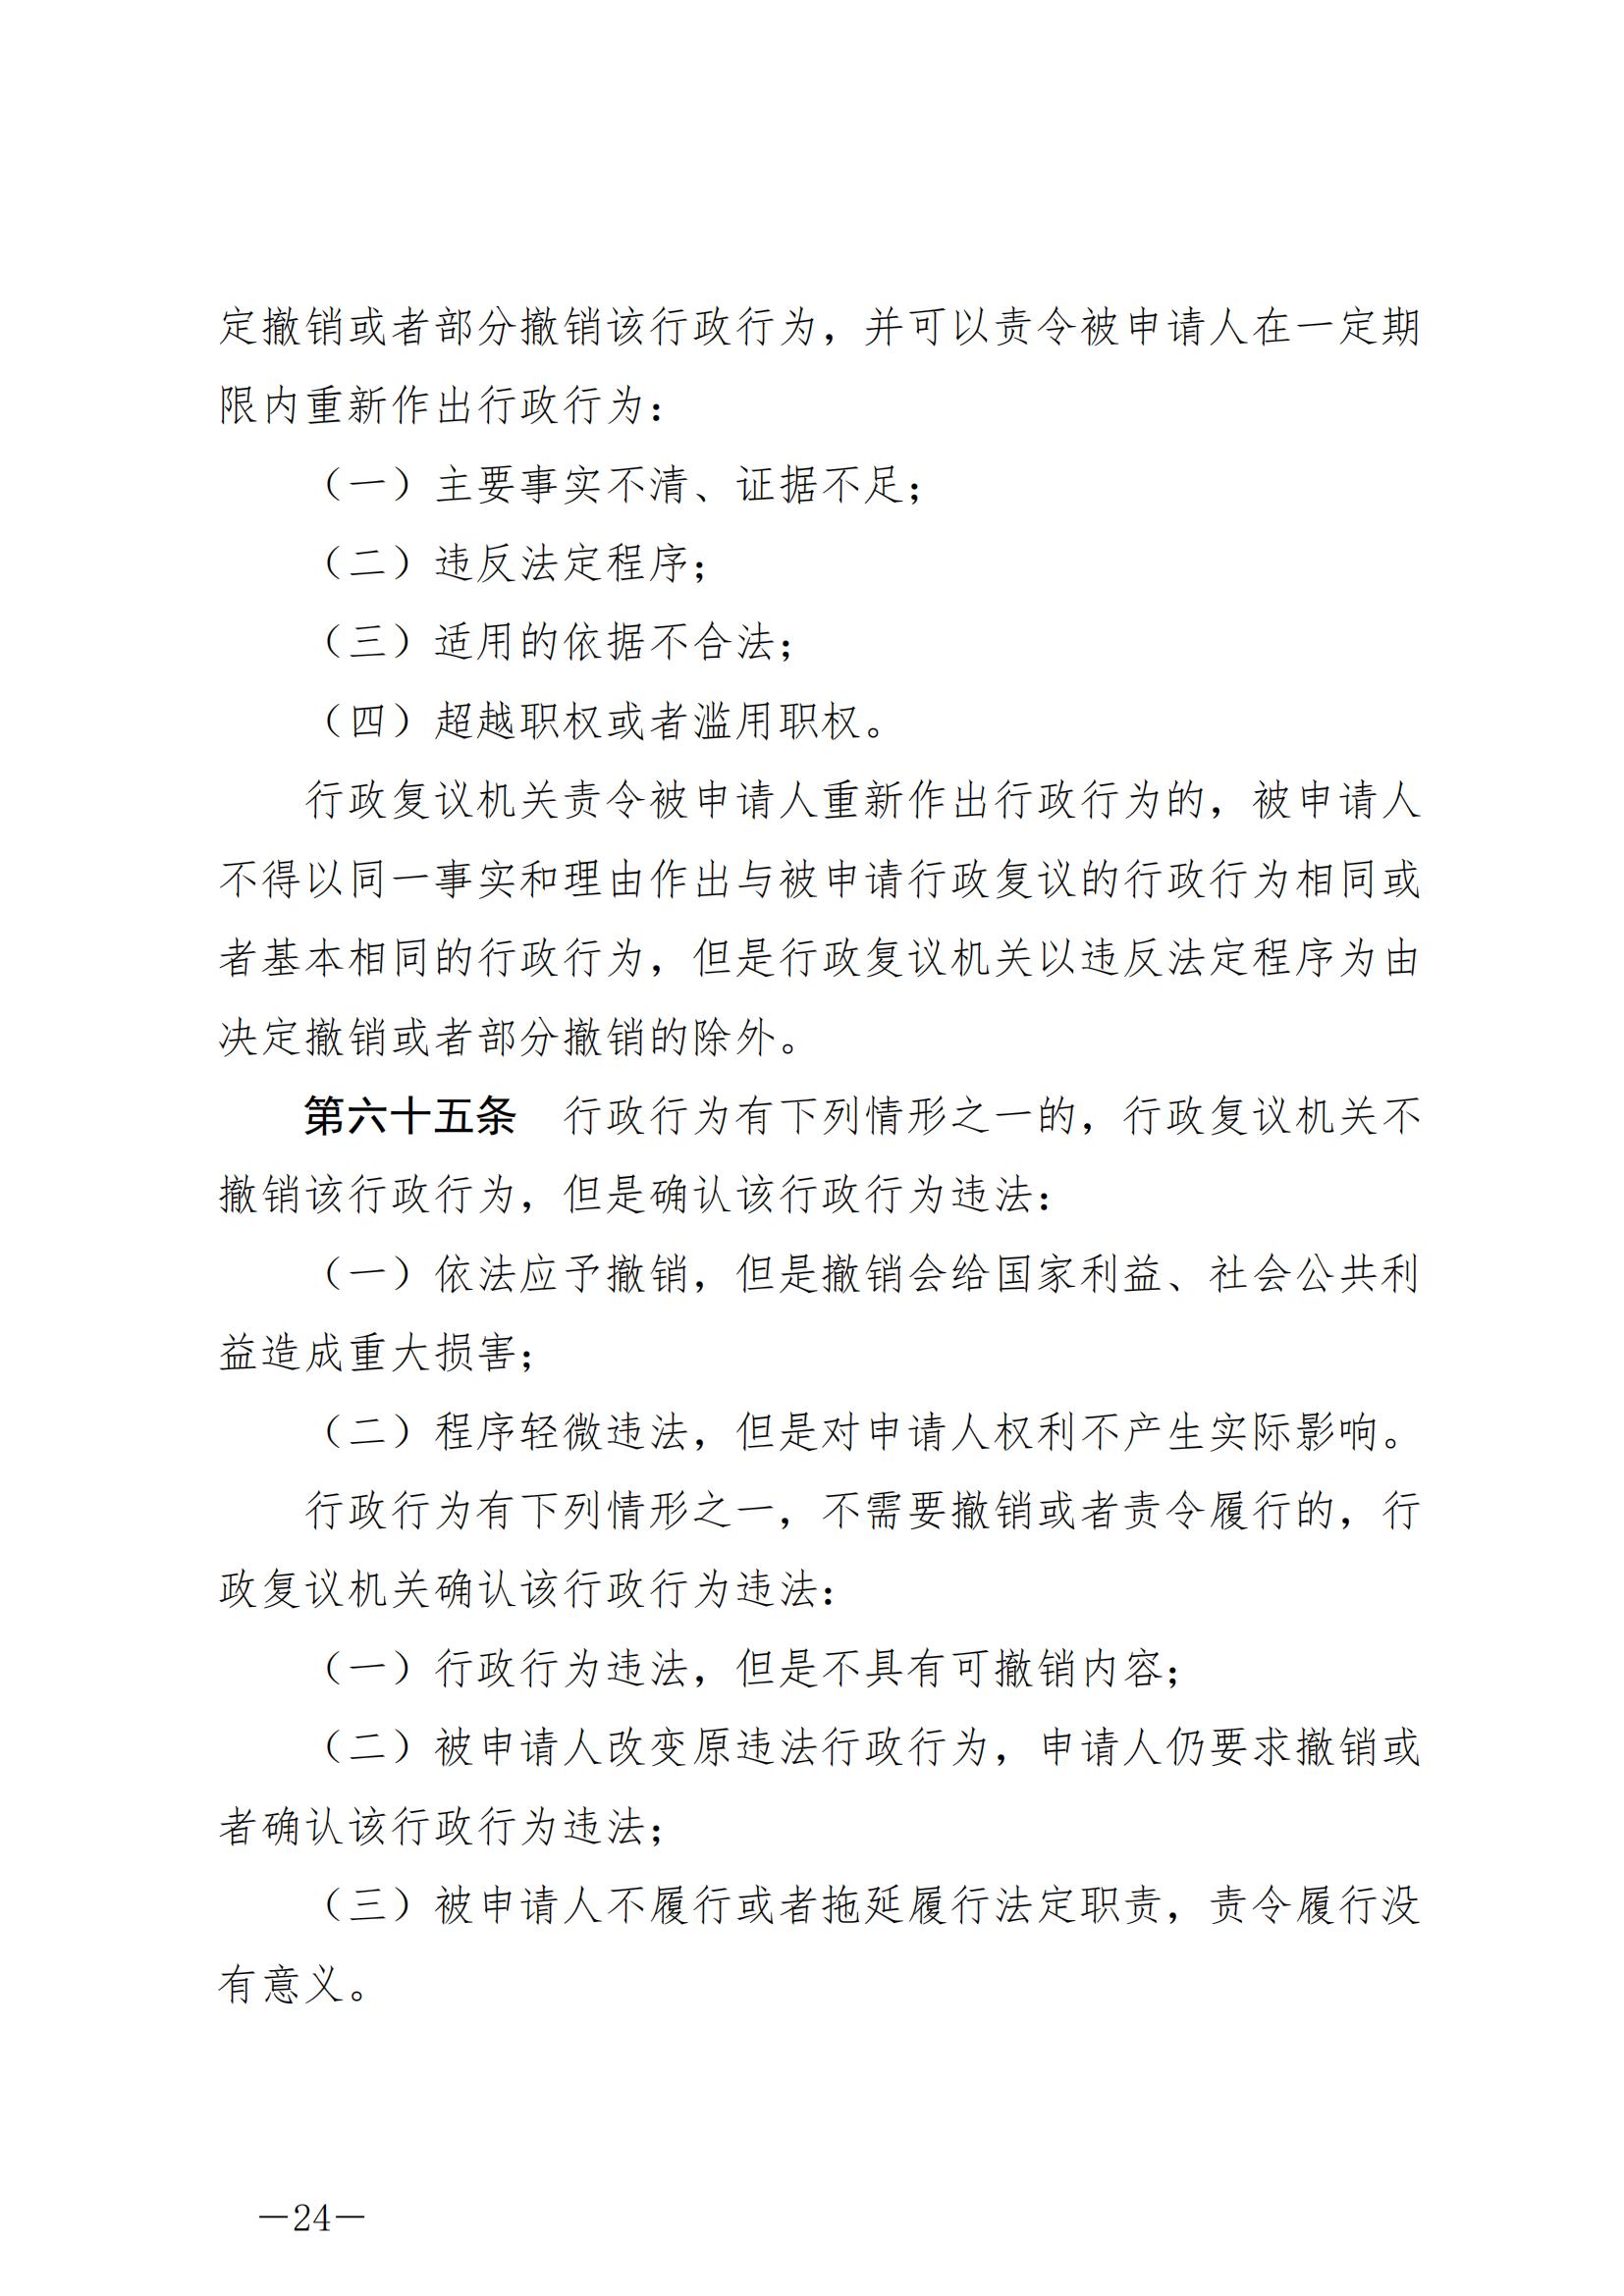 《中华人民共和国行政复议法》_20231204154310_23.jpg